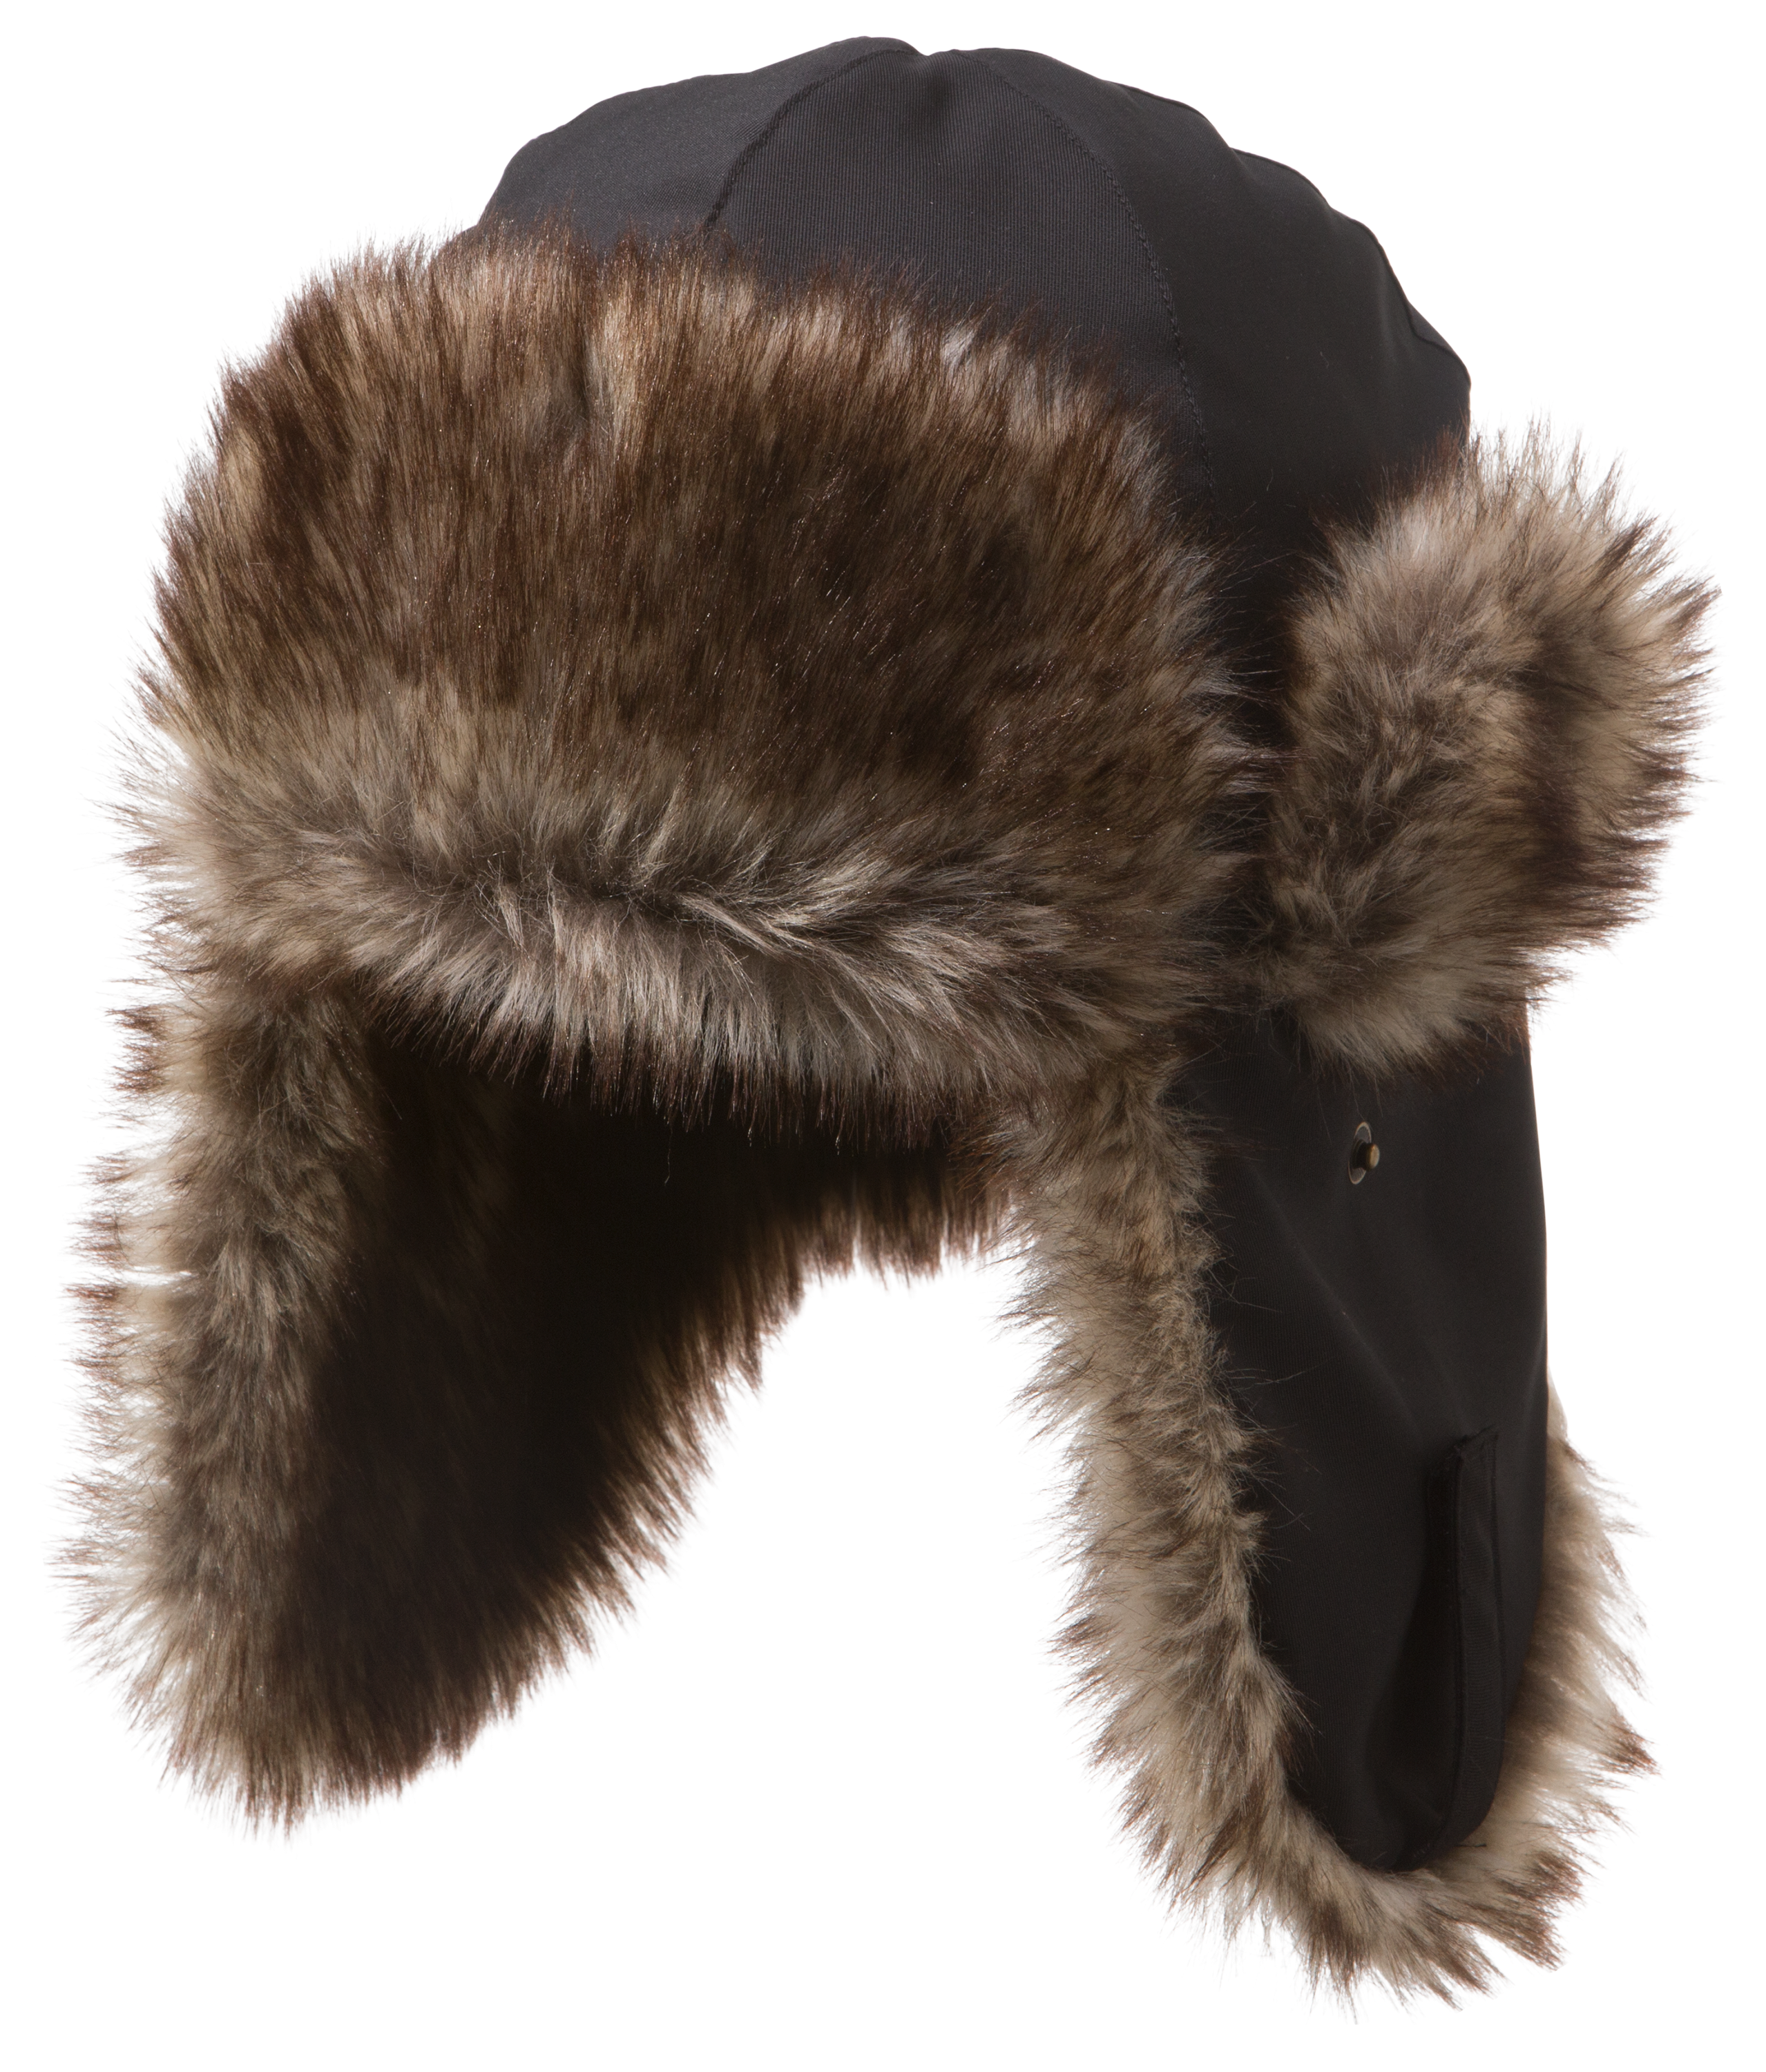 Grand Sierra Faux Fur Aviator Hat for Kids - Black